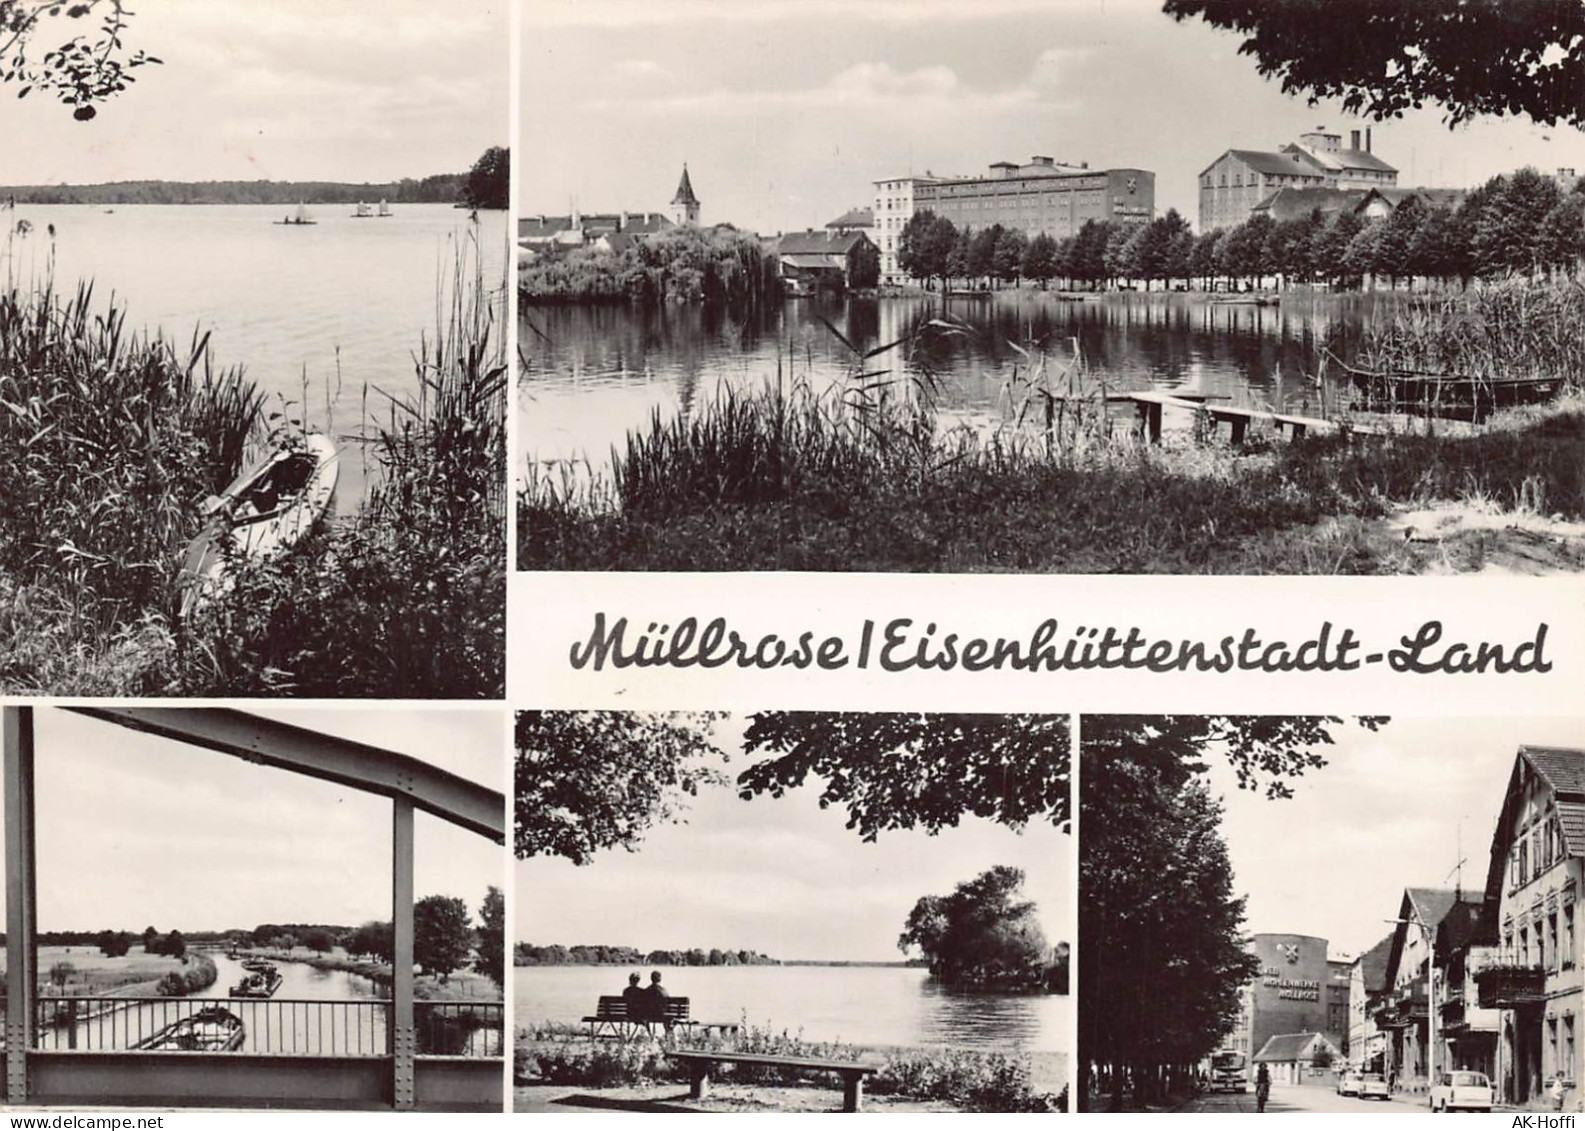 Müllrose Eisenhüttenstadt-Land - Muellrose